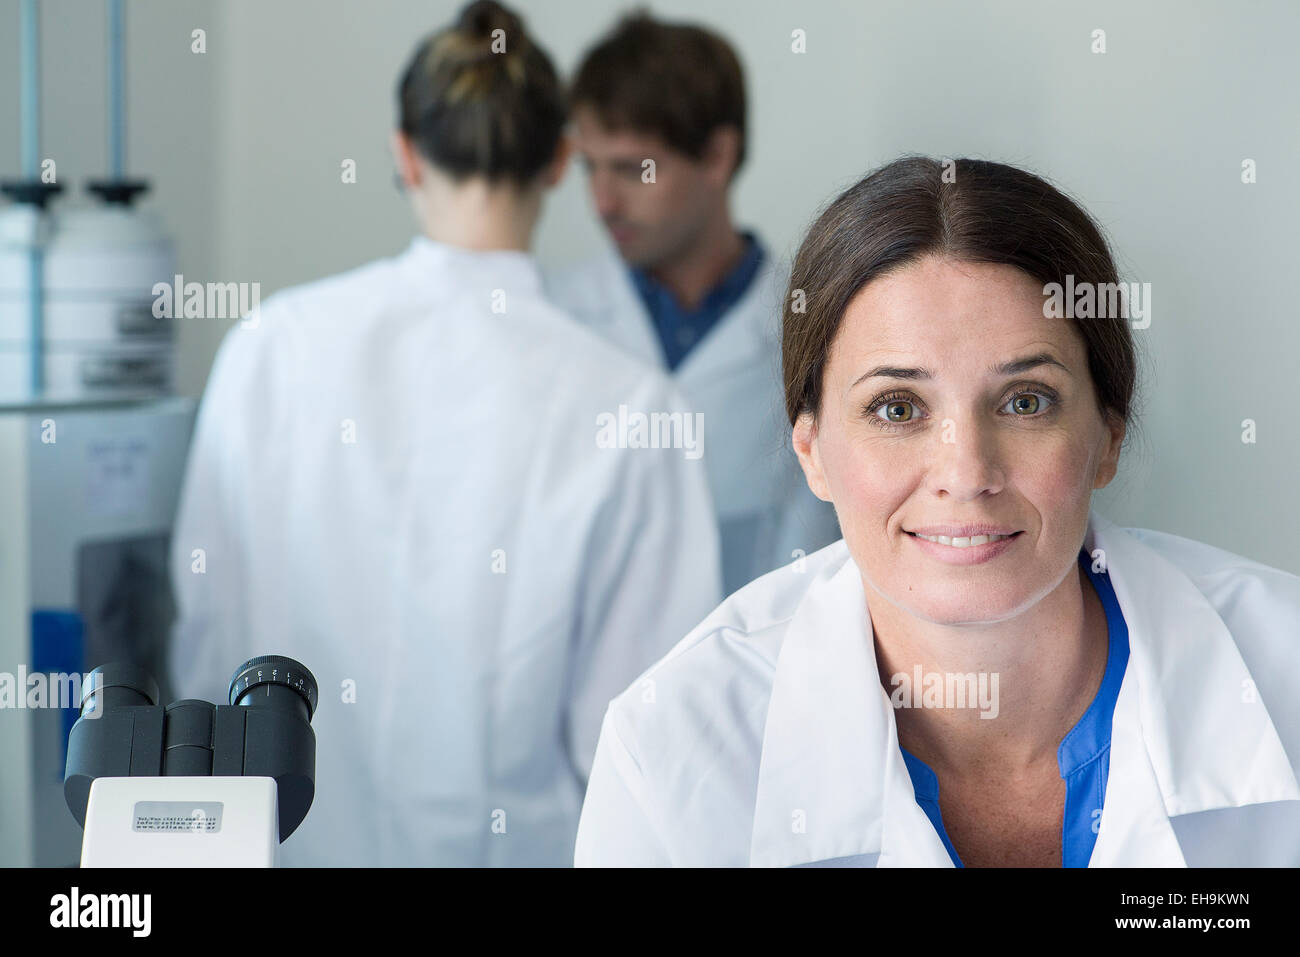 Scientist in laboratory, portrait Stock Photo